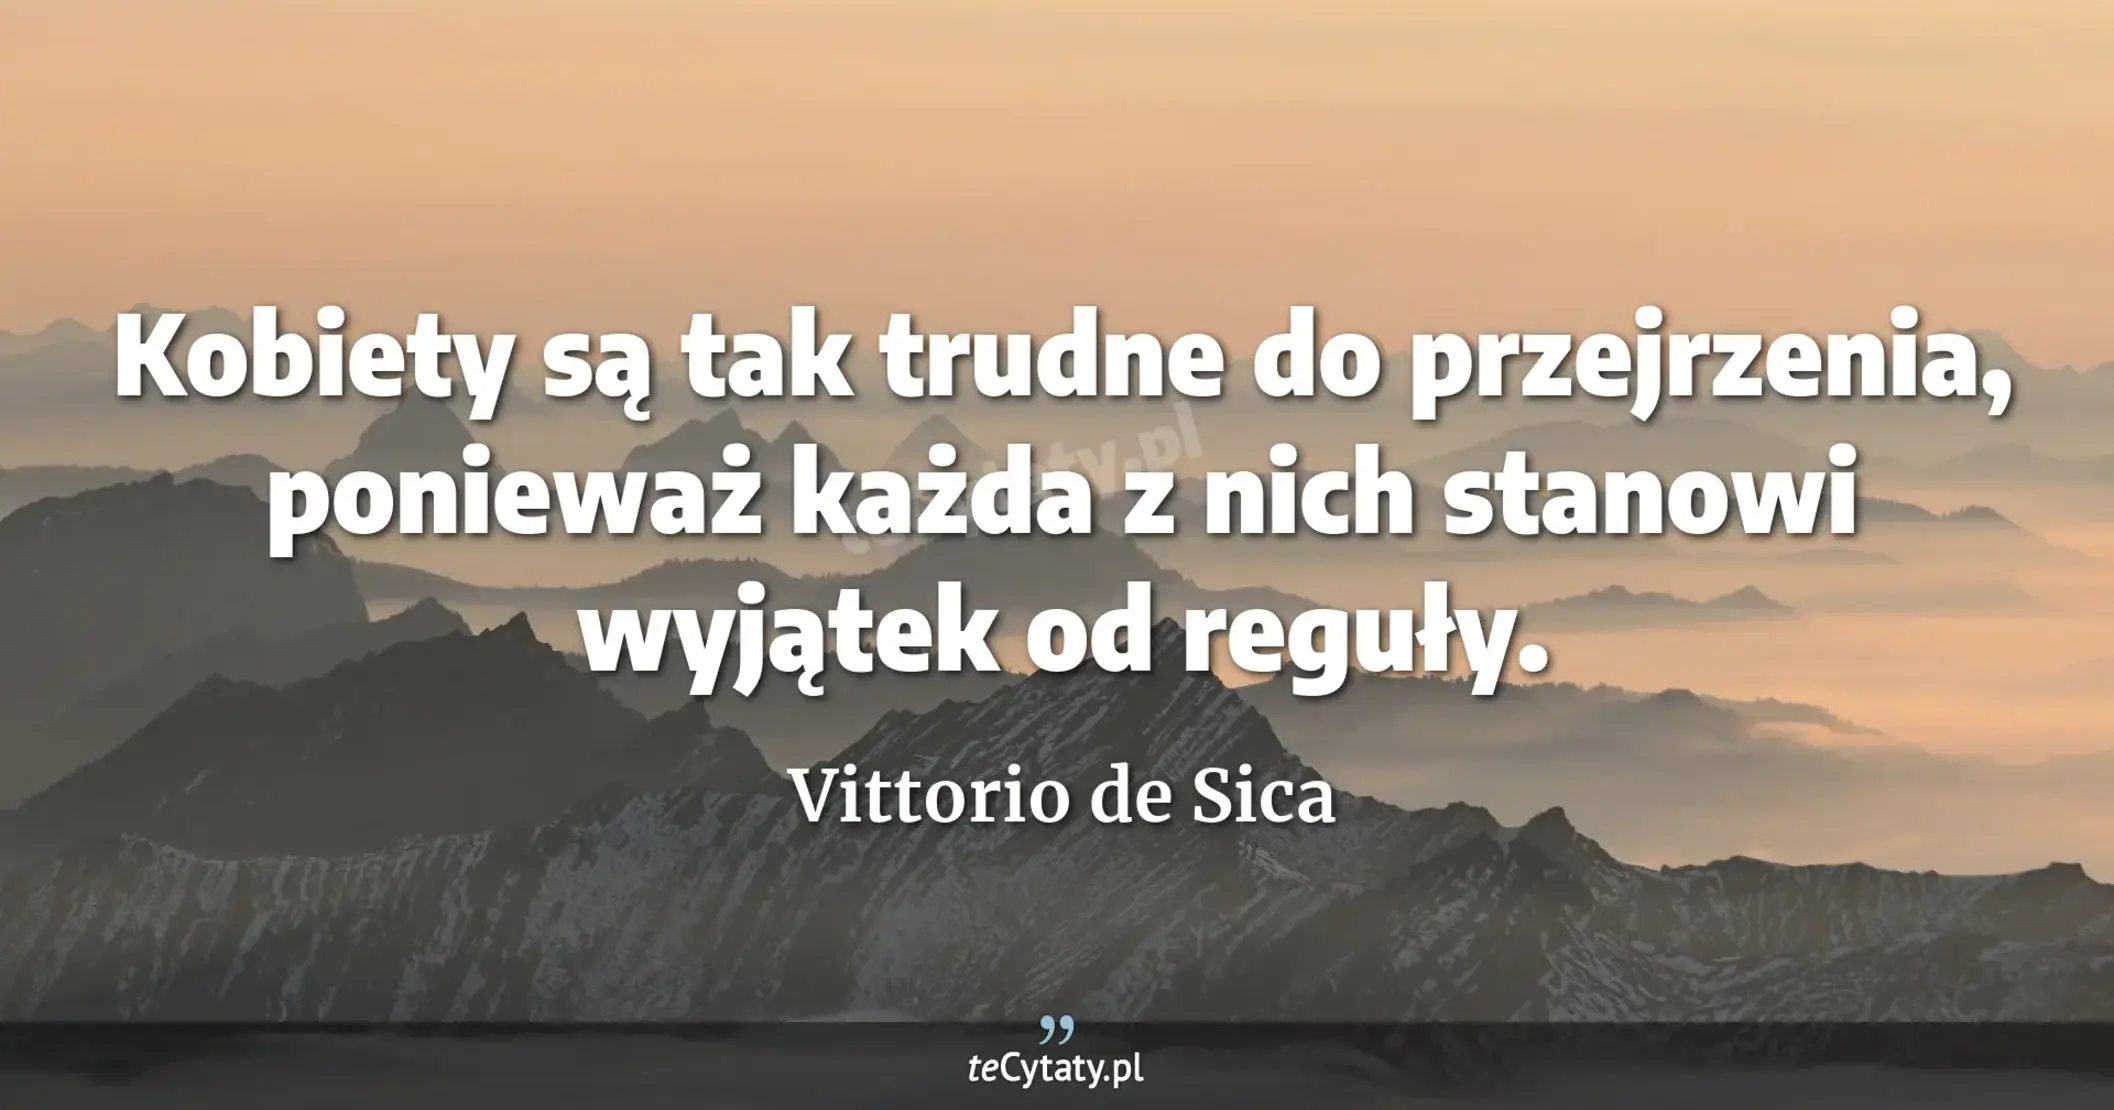 Kobiety są tak trudne do przejrzenia, ponieważ każda z nich stanowi wyjątek od reguły. - Vittorio de Sica